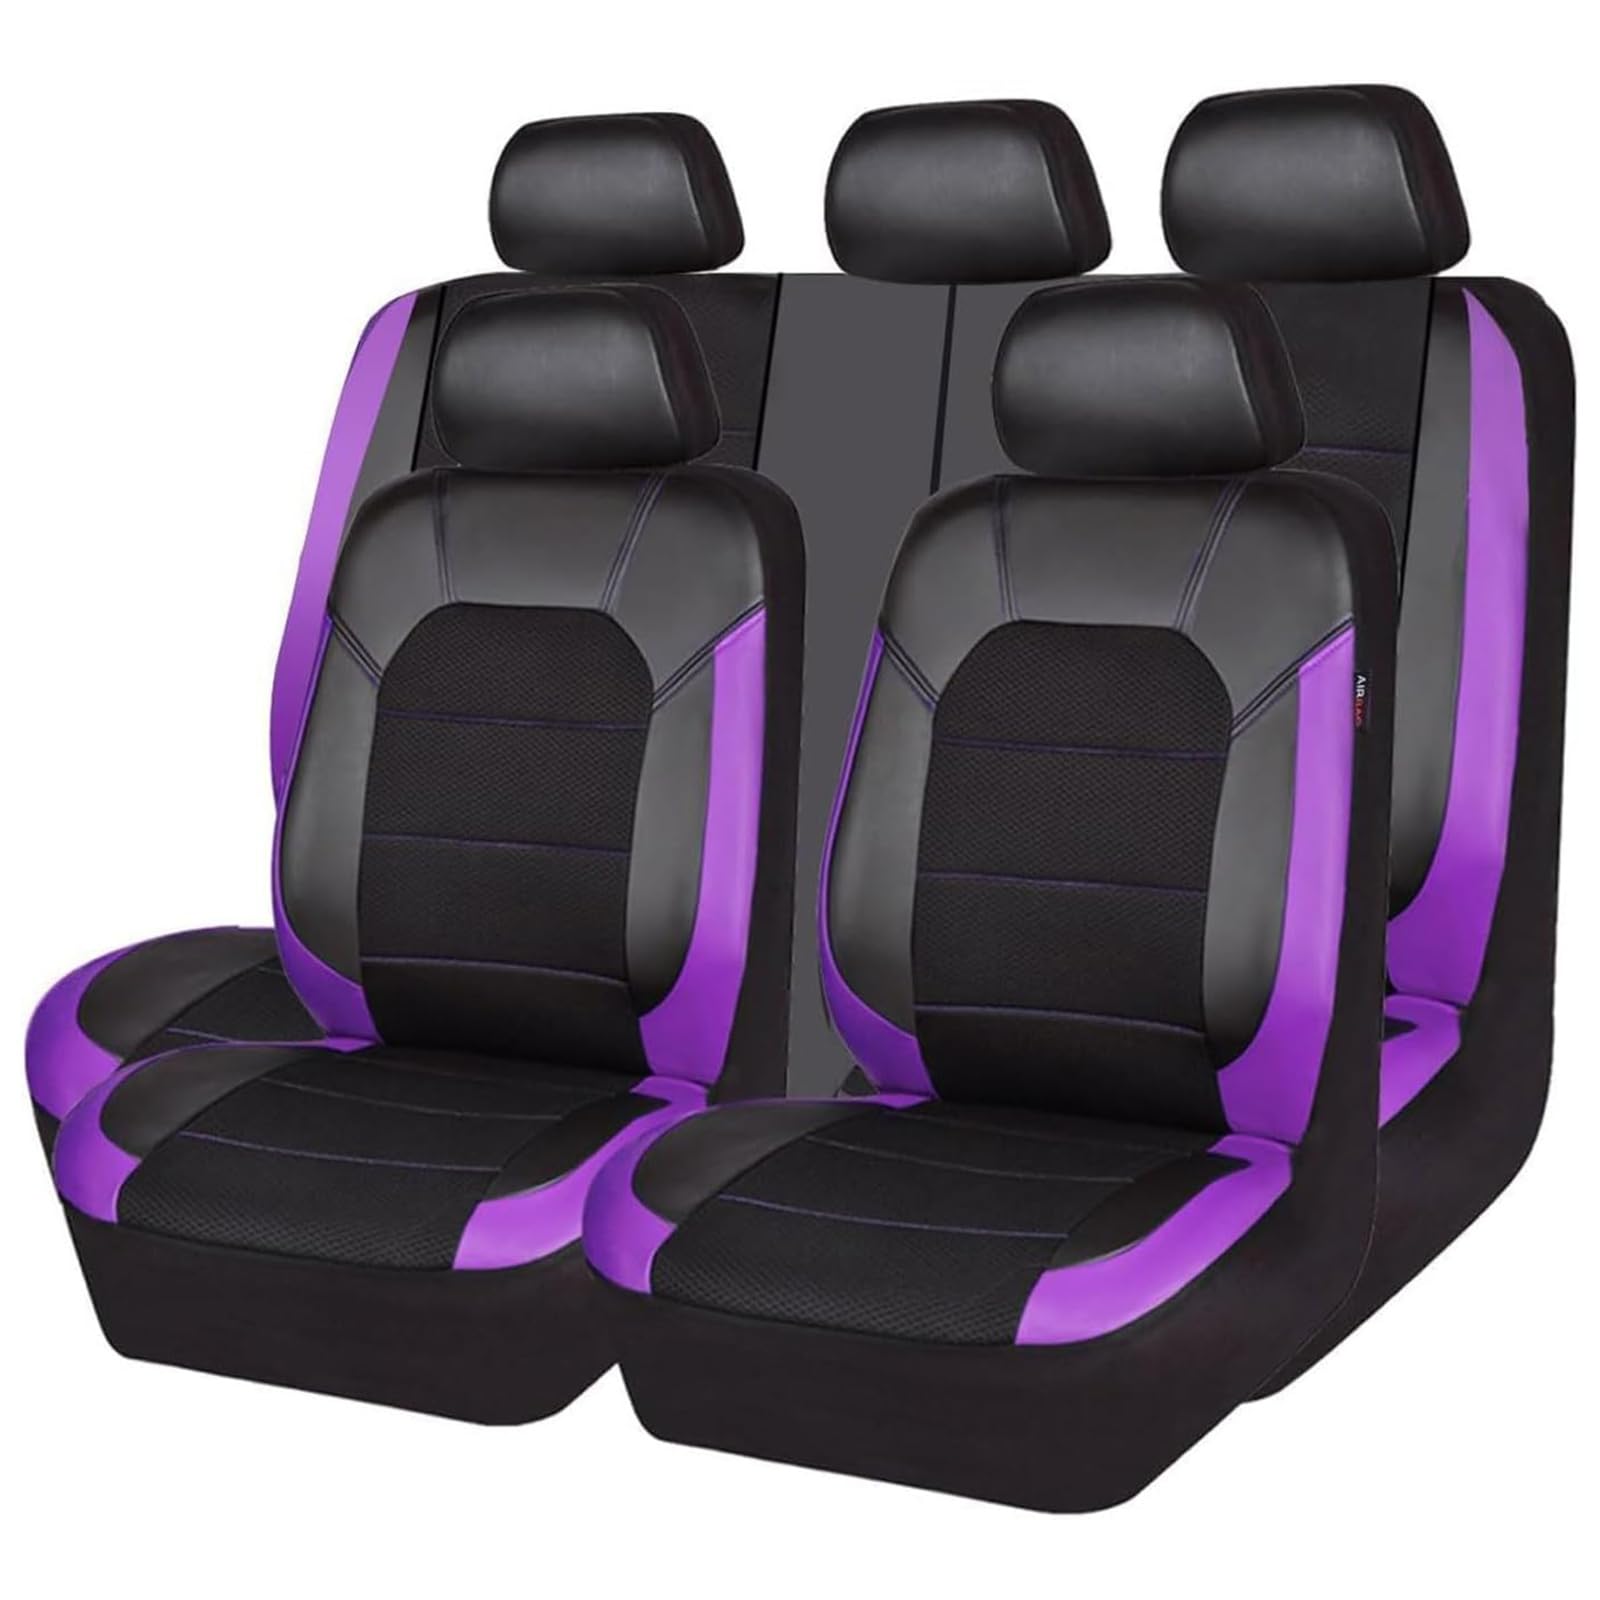 ZXAJDWNU Auto Leder Sitzbezüge Sets Für BMW 2 Series 2014, 5 Sitze Allwetter Vorne Und Hinten Komfortabler Atmungsaktiv Sitzbezüge Sitzschoner Innenraum Zubehör,E/Purple von ZXAJDWNU